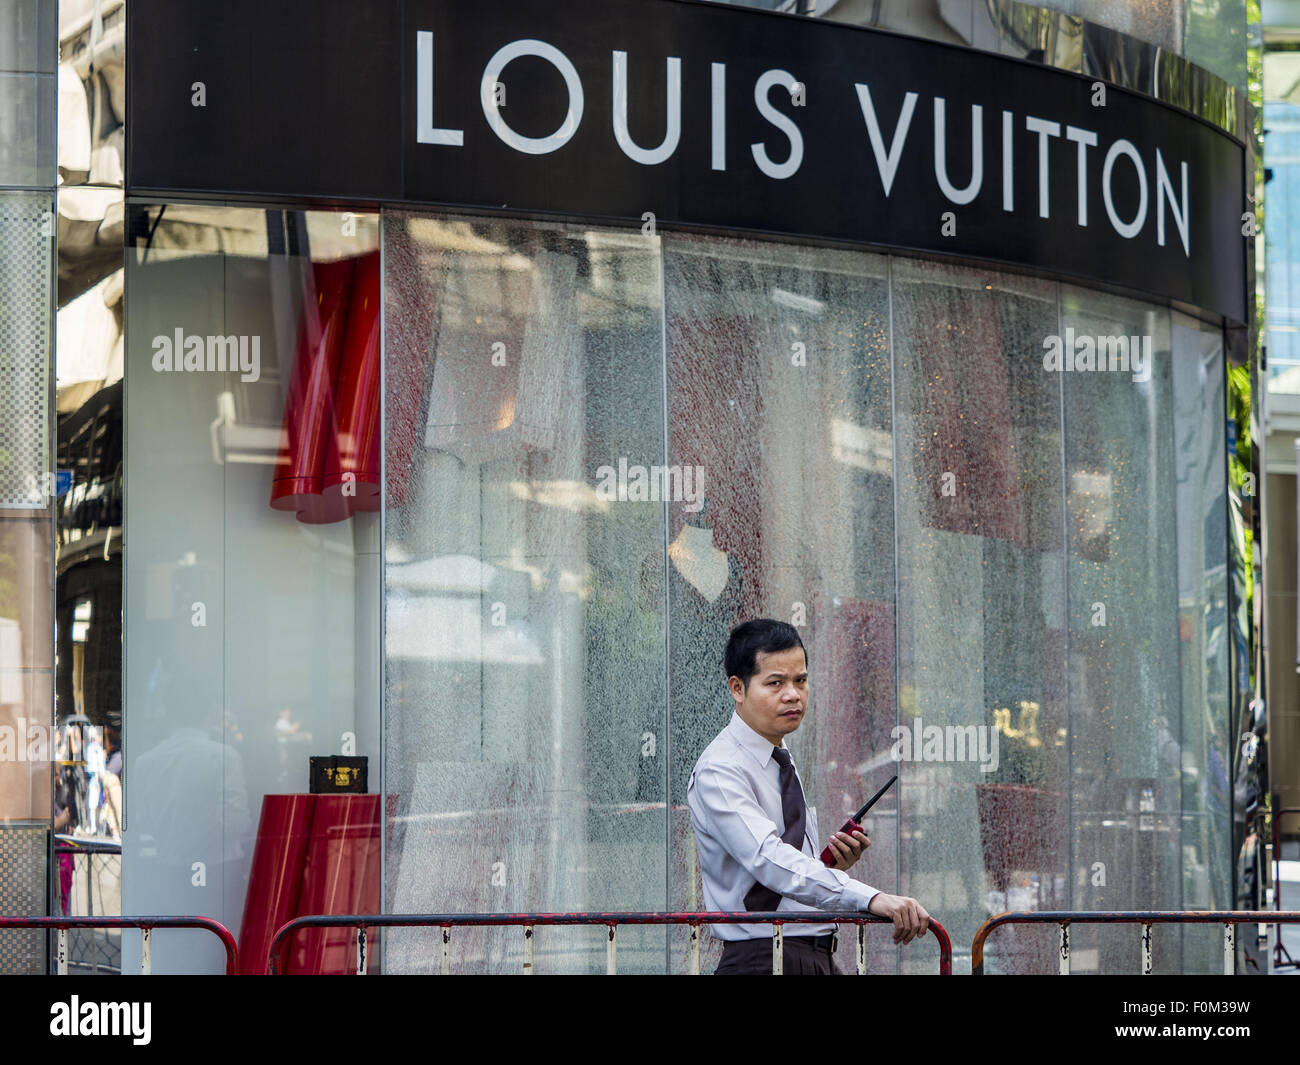 LOUIS VUITTON, Bangkok